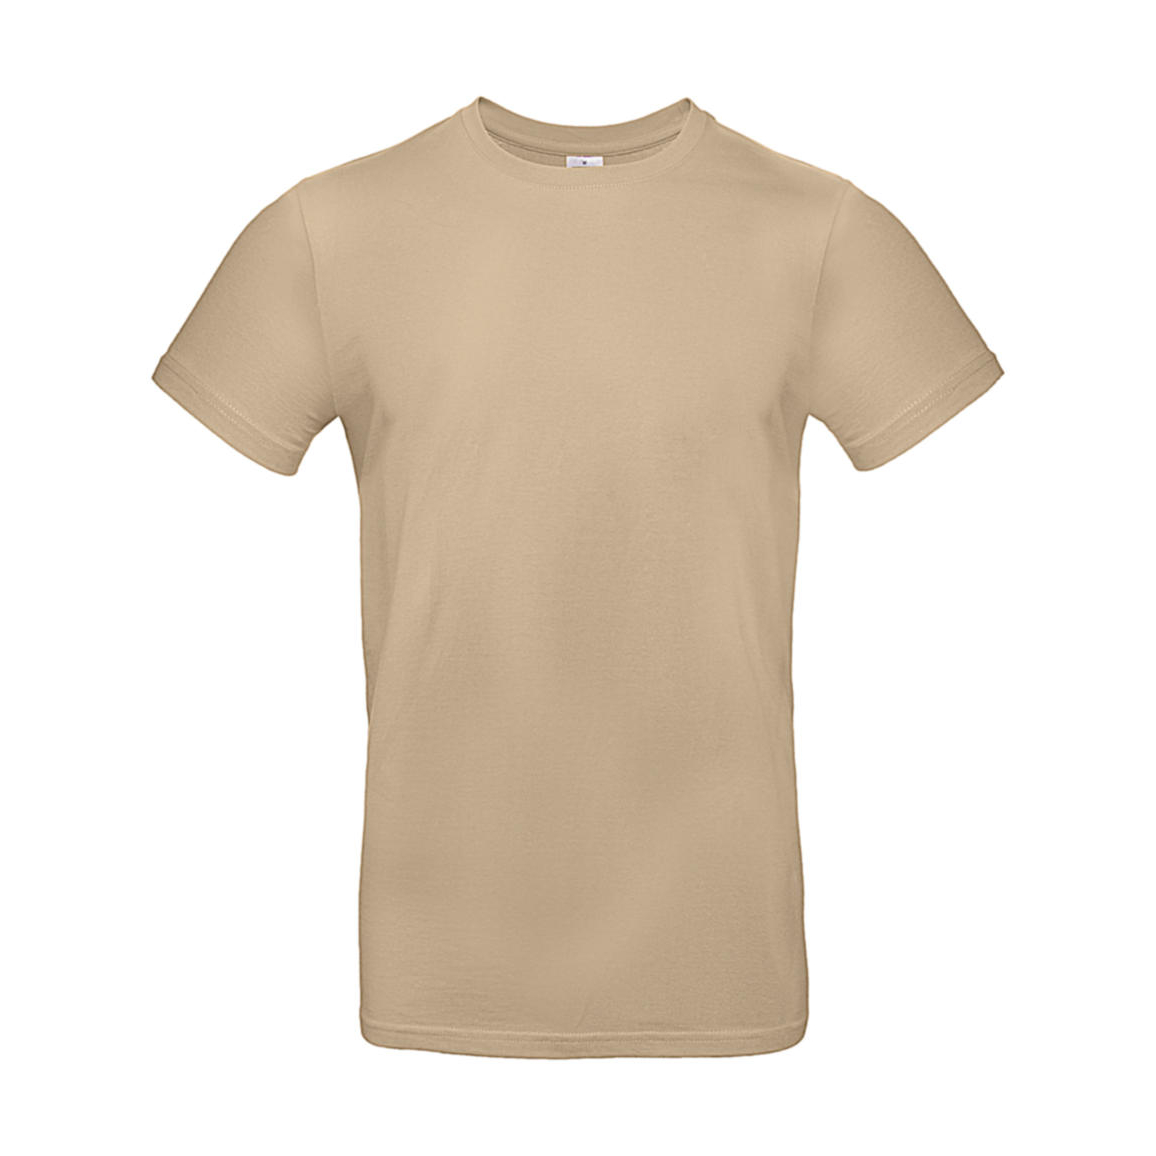 Triko pánské B&C E190 T-Shirt - béžové, L